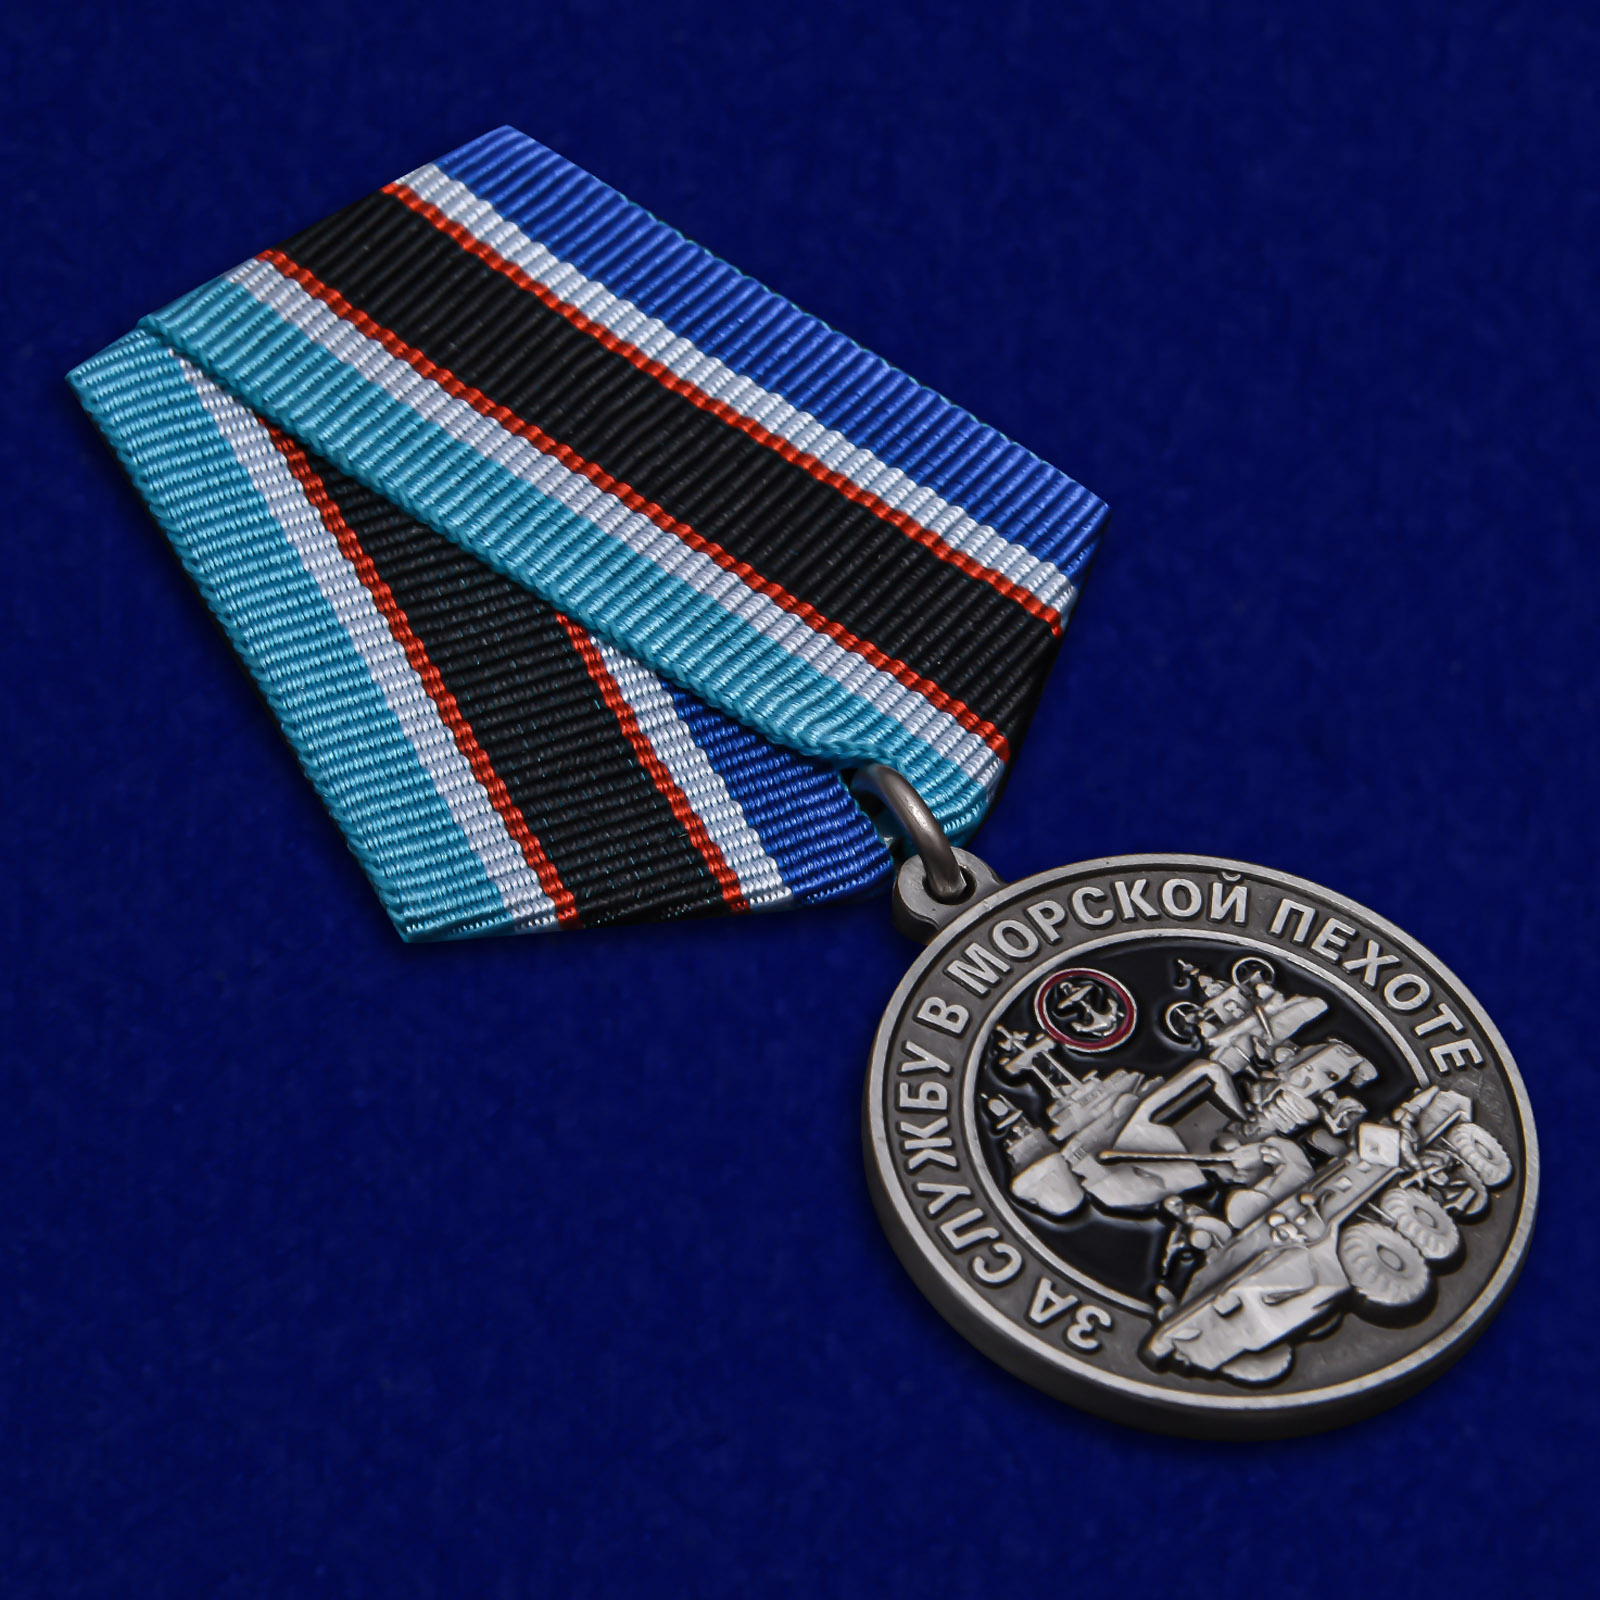 Памятная медаль "За службу в Морской пехоте" 